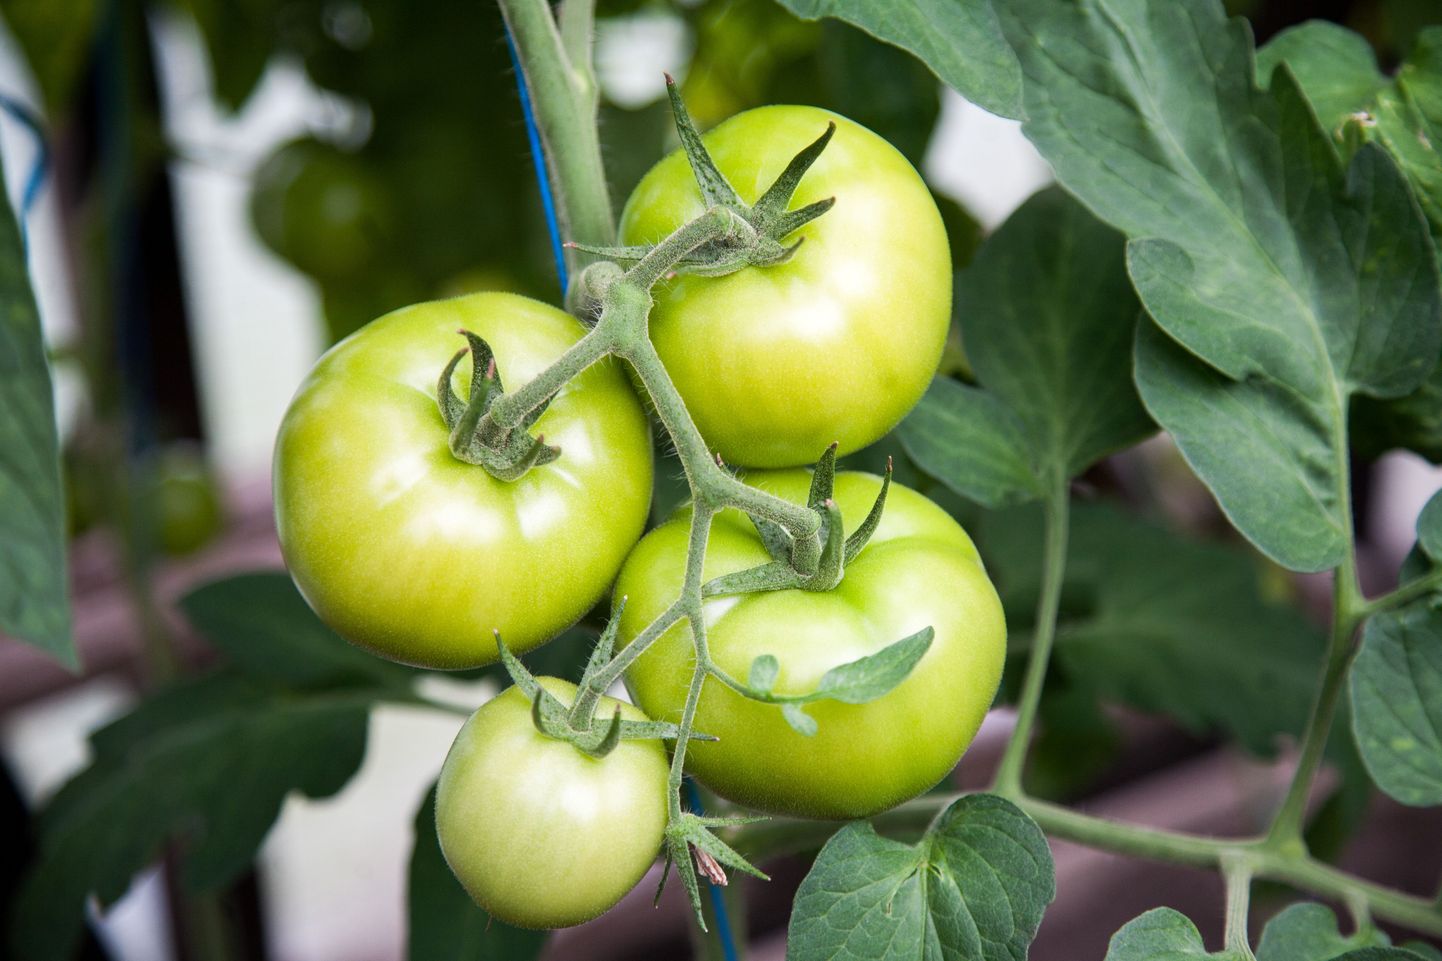 Rohelised tomatid korja taimelt koos viljavarrega või lõika koos kobaraga, sest nii säilivad need paremini ja järelvalmivad kiiremini.